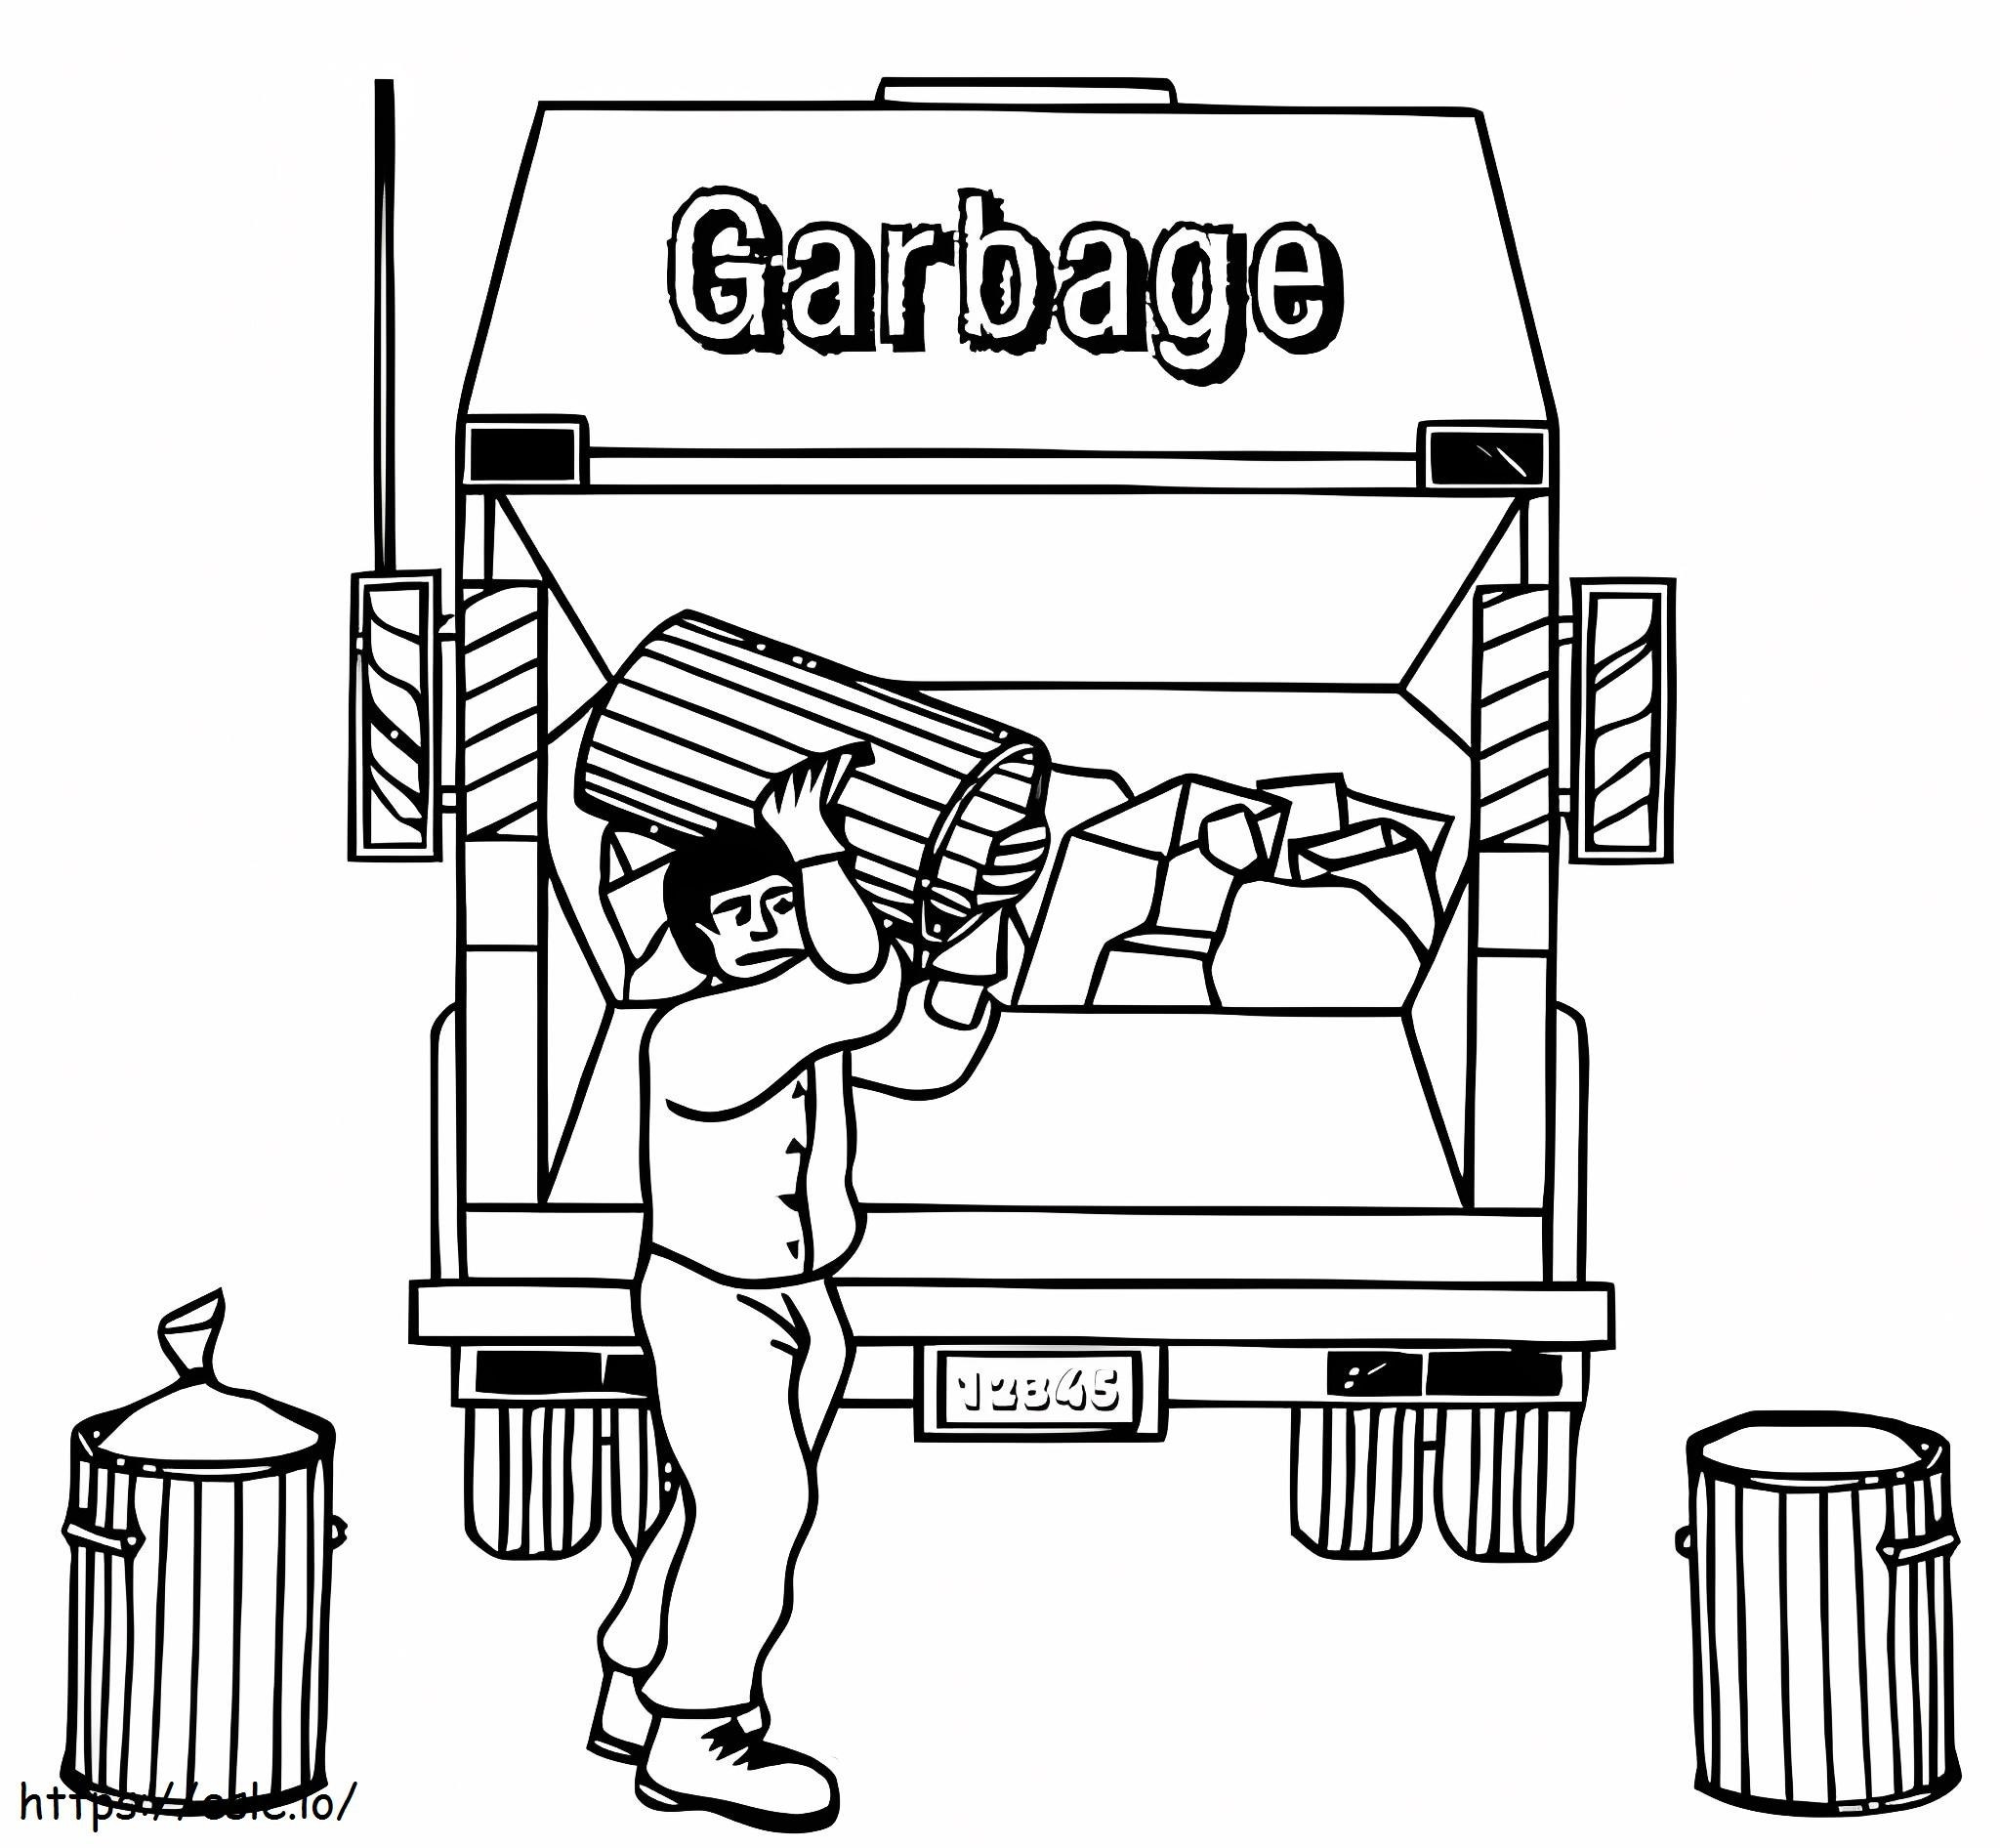 ゴミ収集車とゴミ収集業者 ぬりえ - 塗り絵